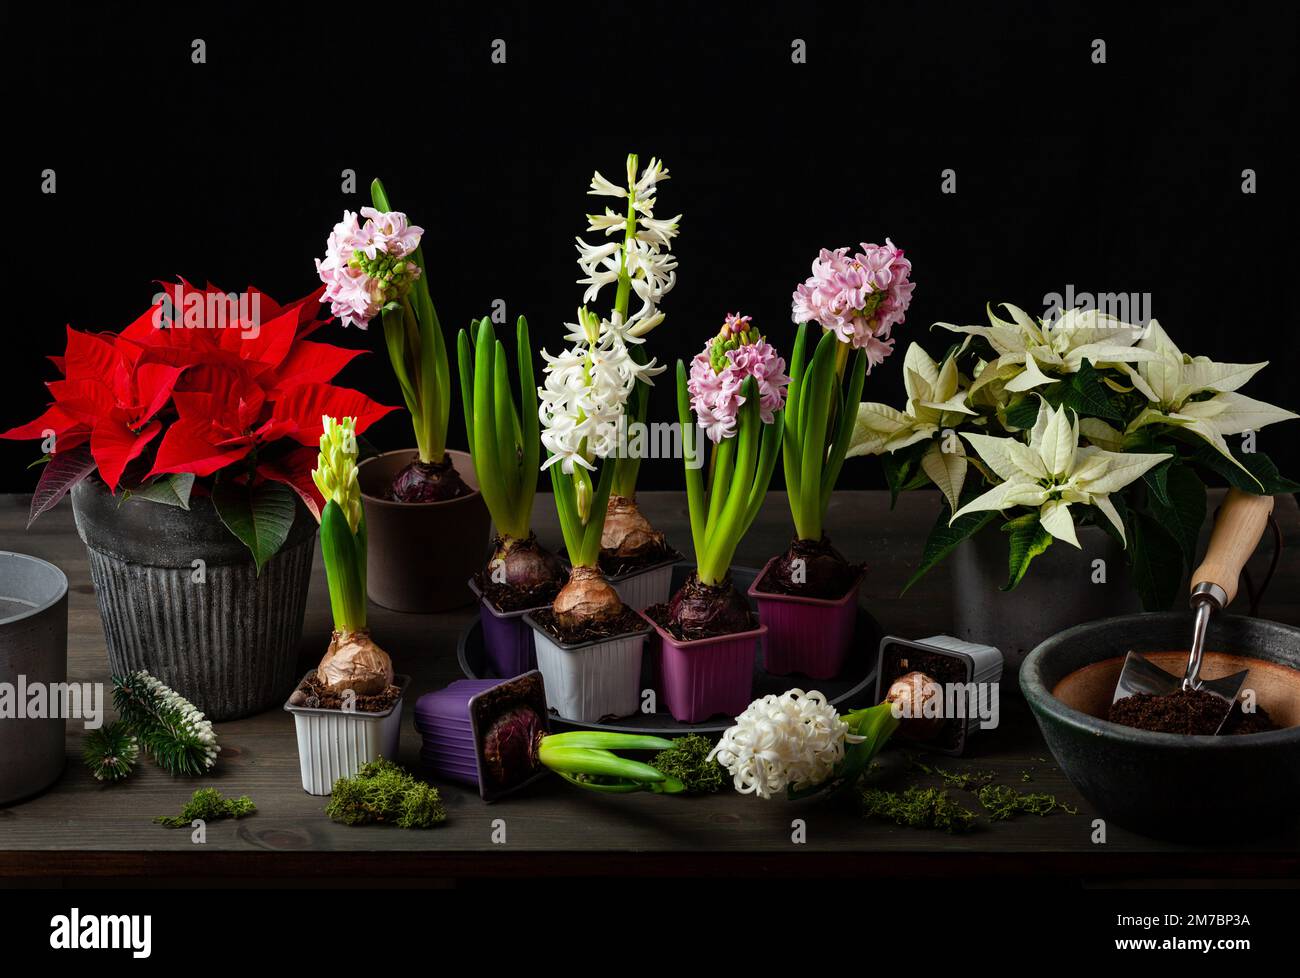 plantation de fleurs d'hiver ou de printemps jacinthe poinsettia sur fond noir, concept de jardinage Banque D'Images